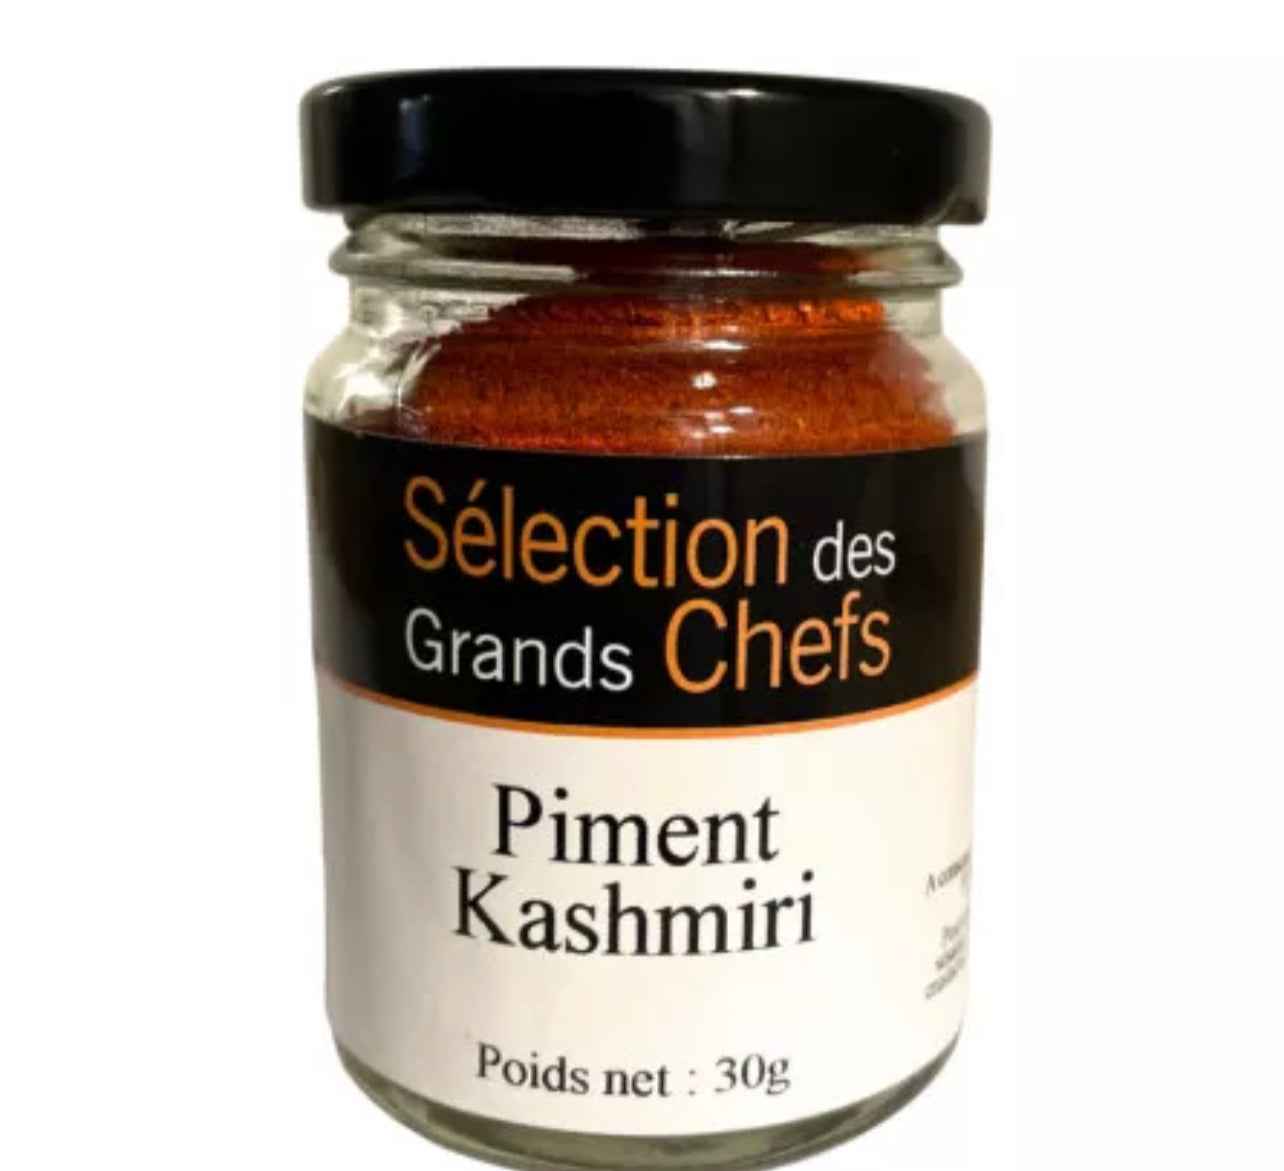 Refill - Kashmiri Chilli from Kashmir - 30g